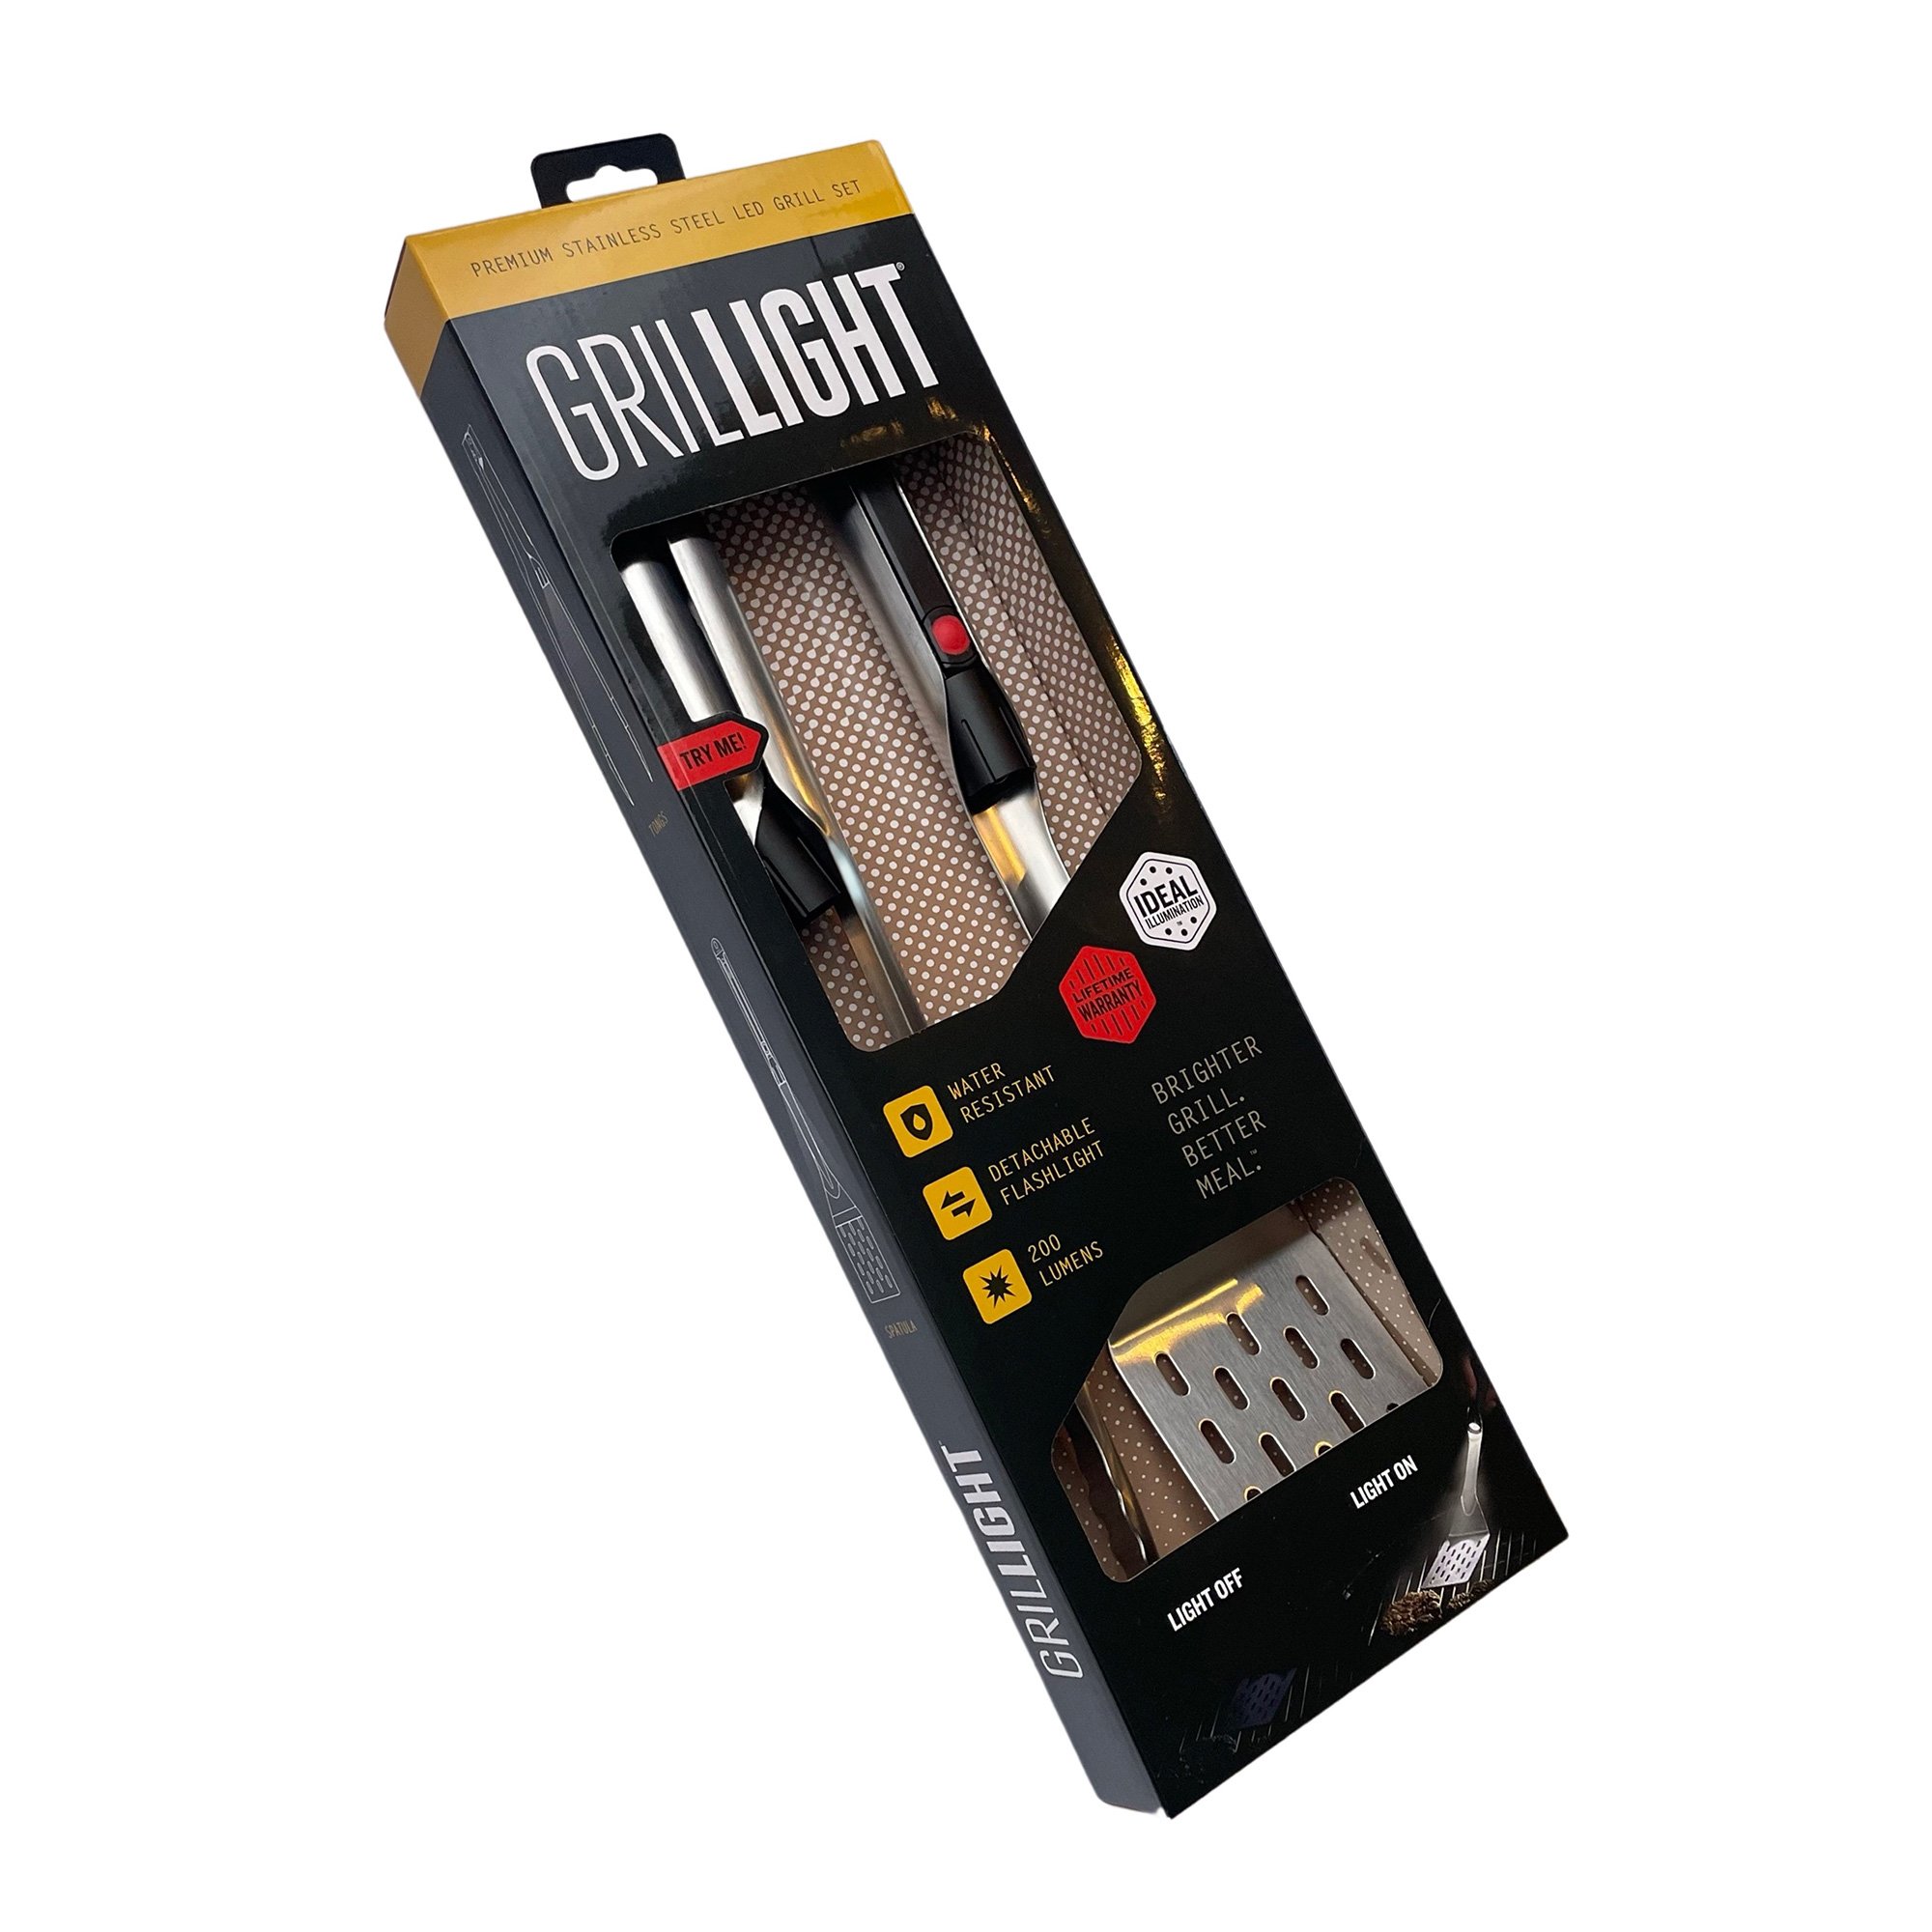 Grillight Verktøysett 2-delt med LED-lampe test